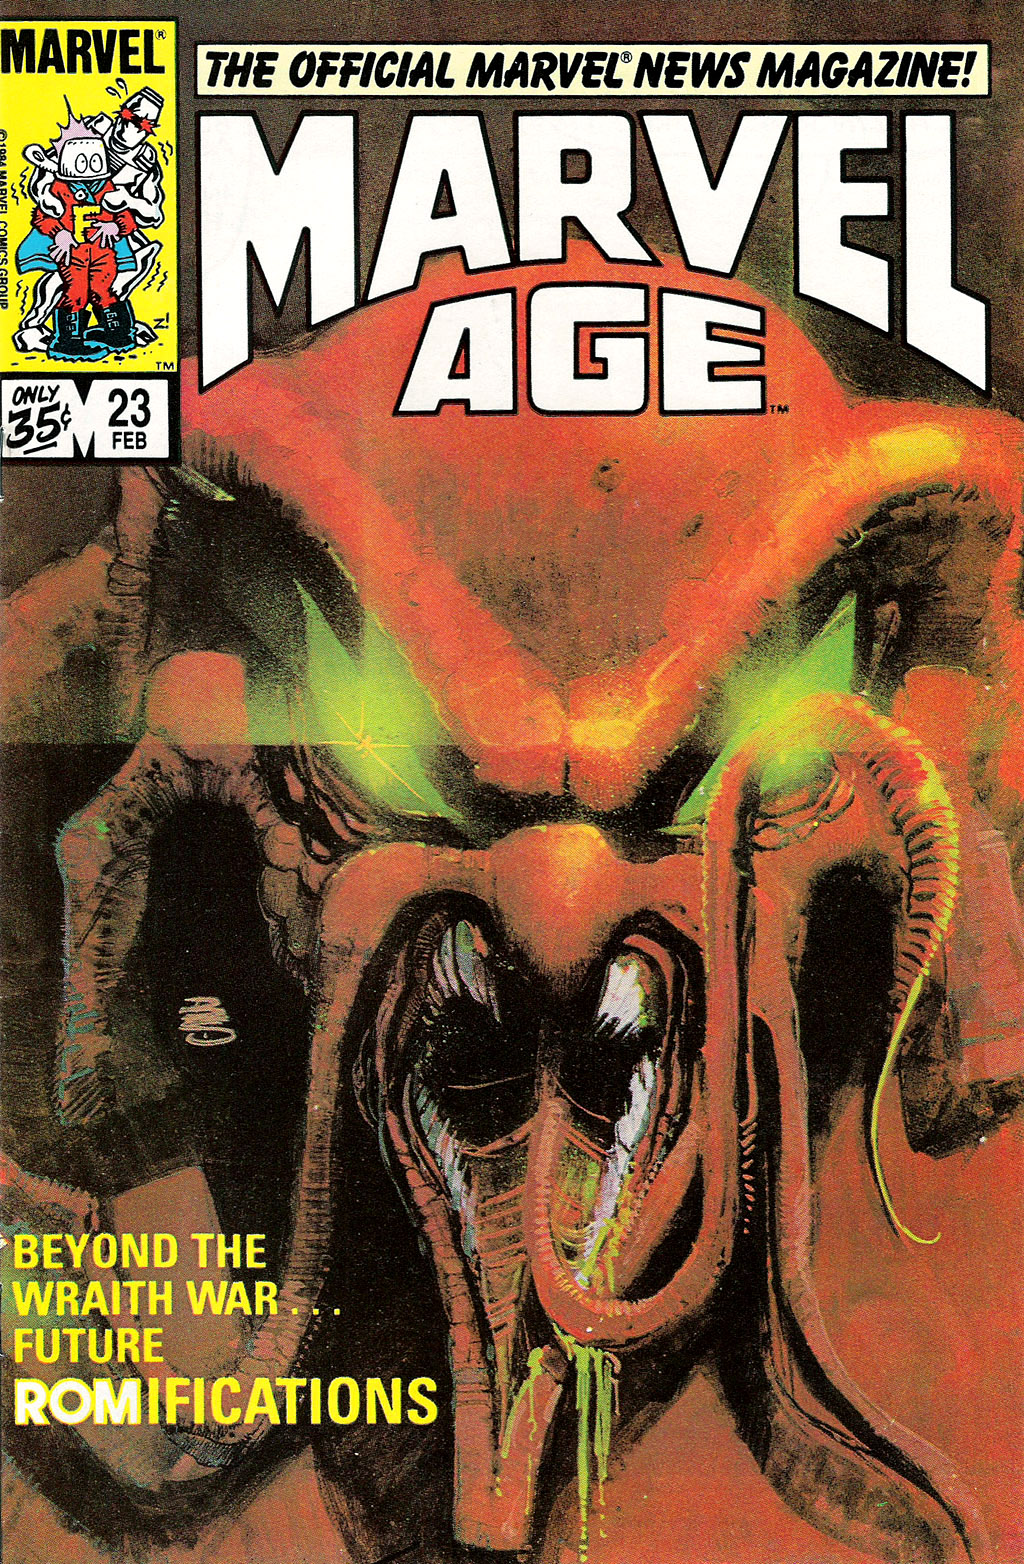 Bill Sienkiewicz - Marvel Age #23, February 1985